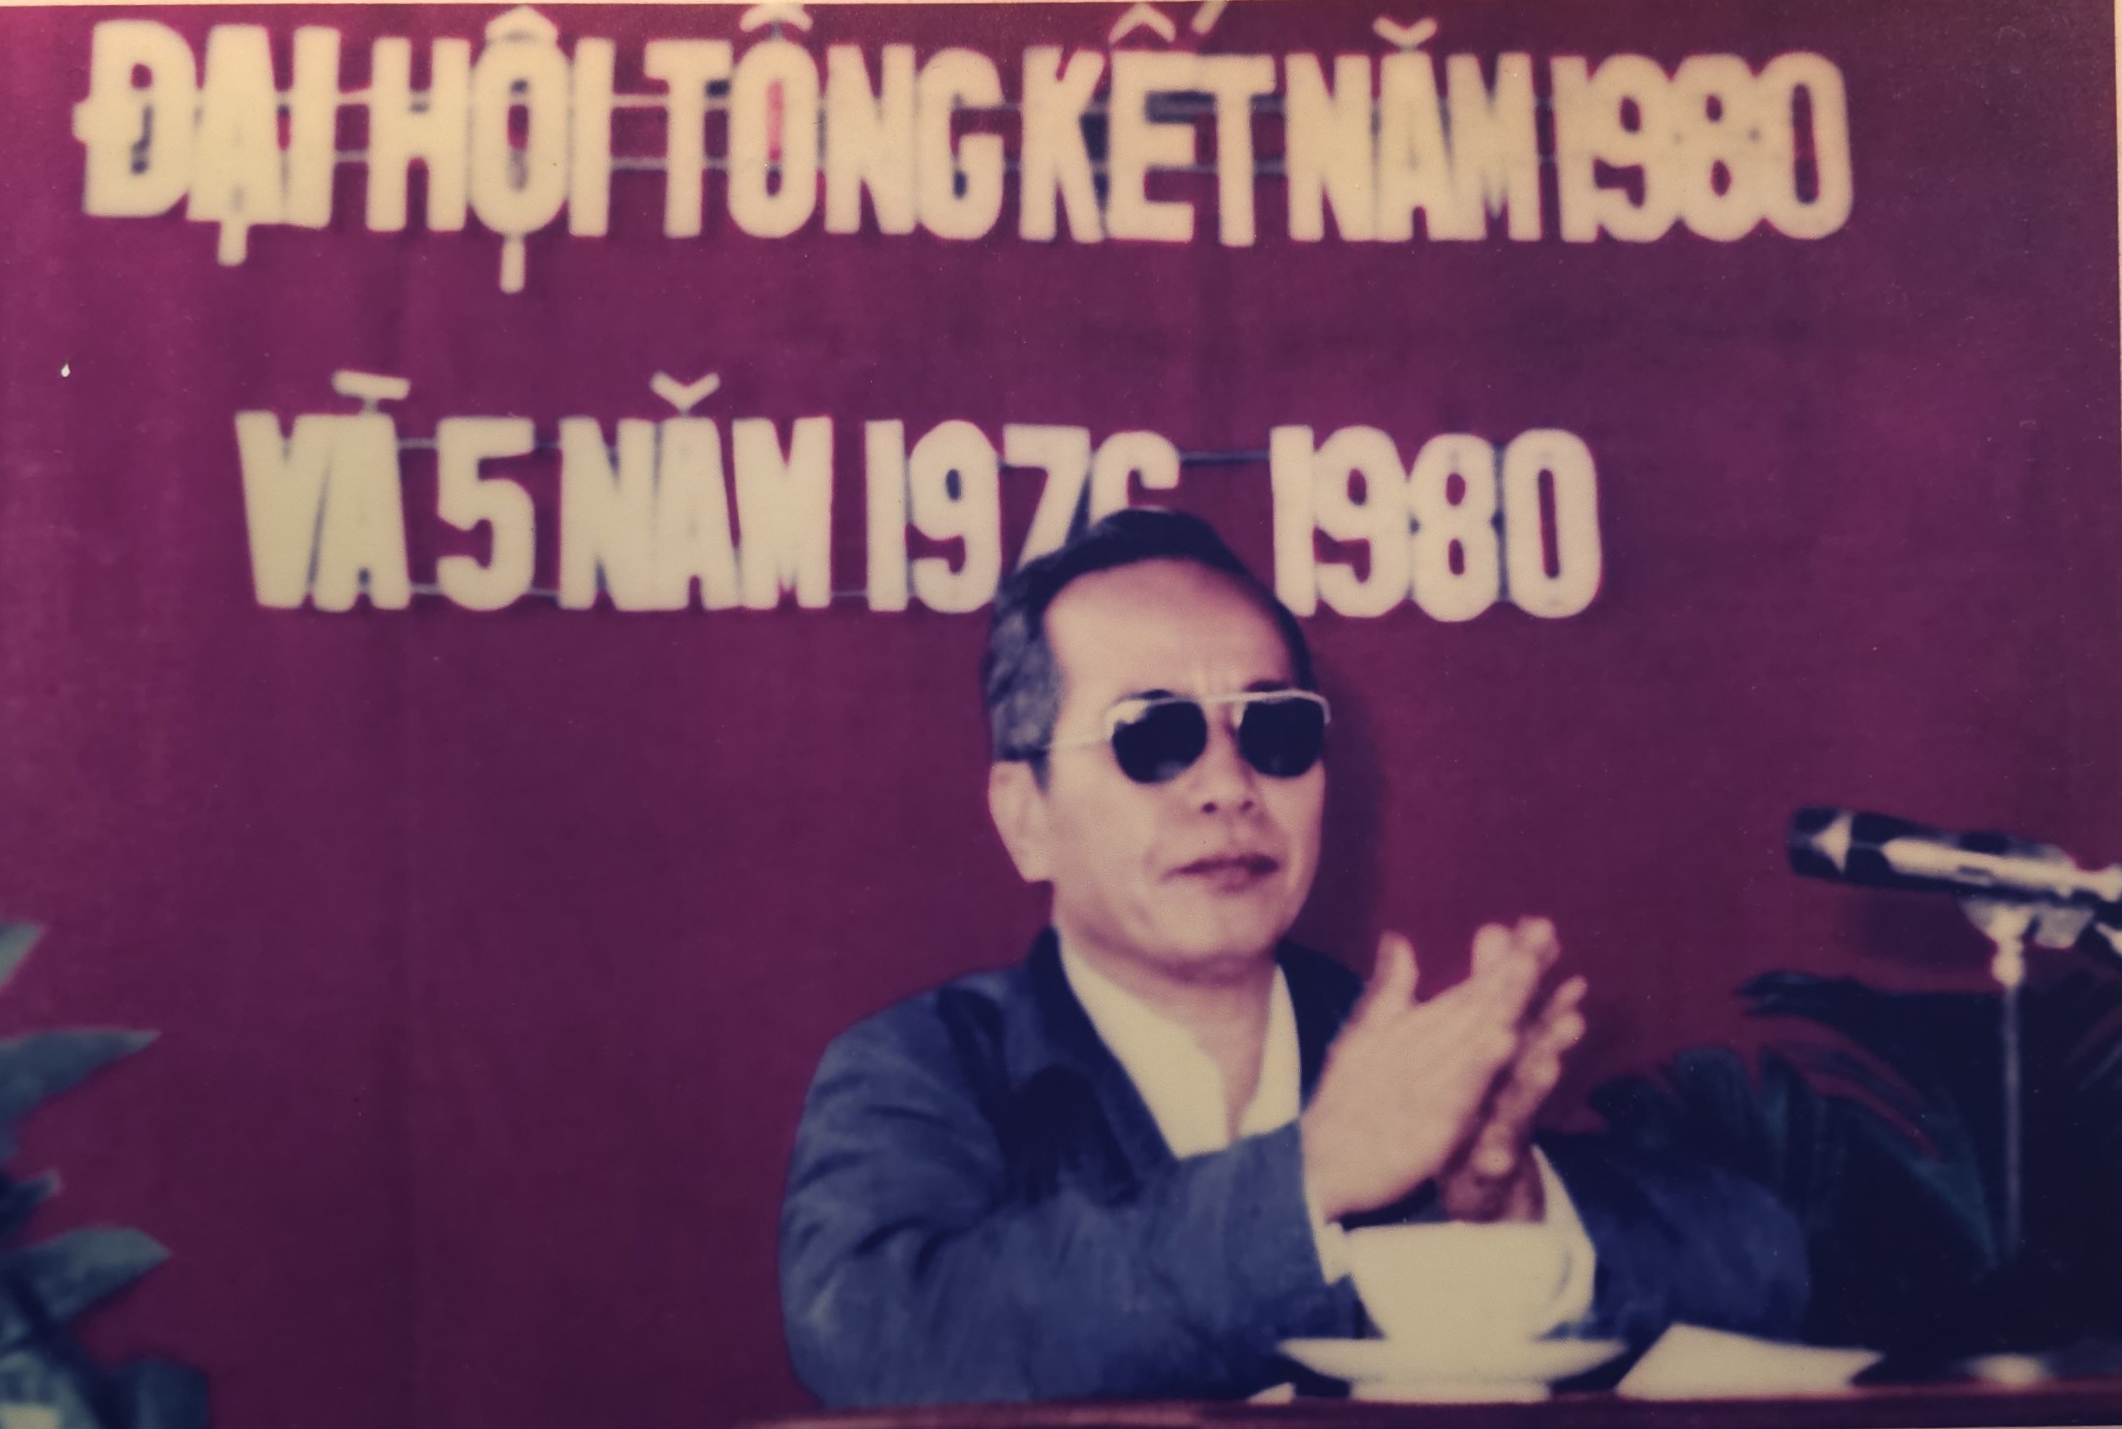 Ông Hoàng Minh Thắng, Chủ tịch UBND tỉnh Quảng Nam - Đà Nẵng phát biểu tại Đại hội tổng kết 5 năm 1976-1980 của Xí nghiệp công tư hợp doanh Dệt May 29-3. (Ảnh tư liệu)